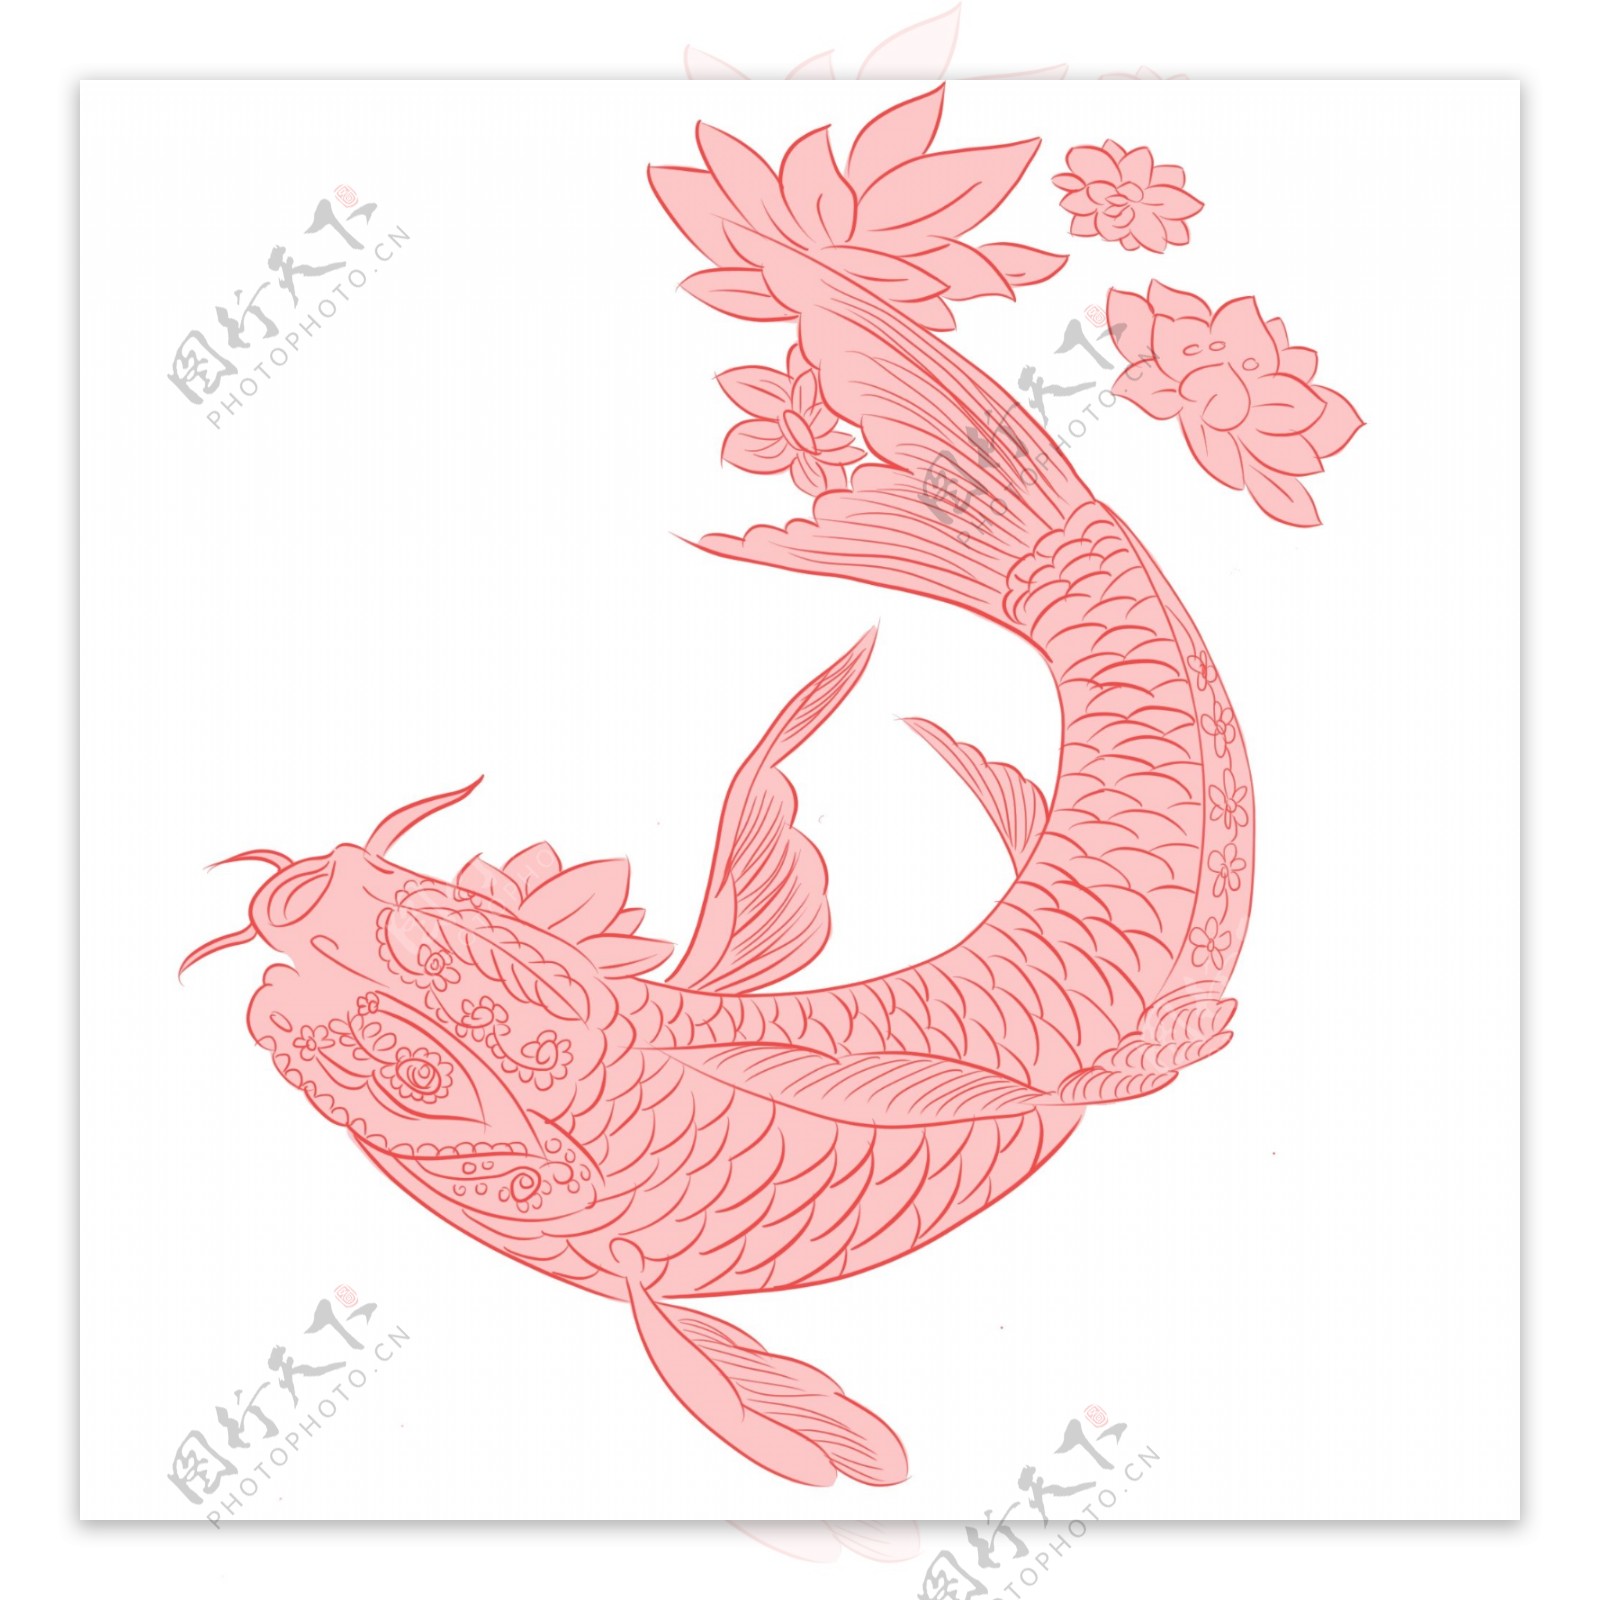 手绘动物红色创意中国风鲤鱼